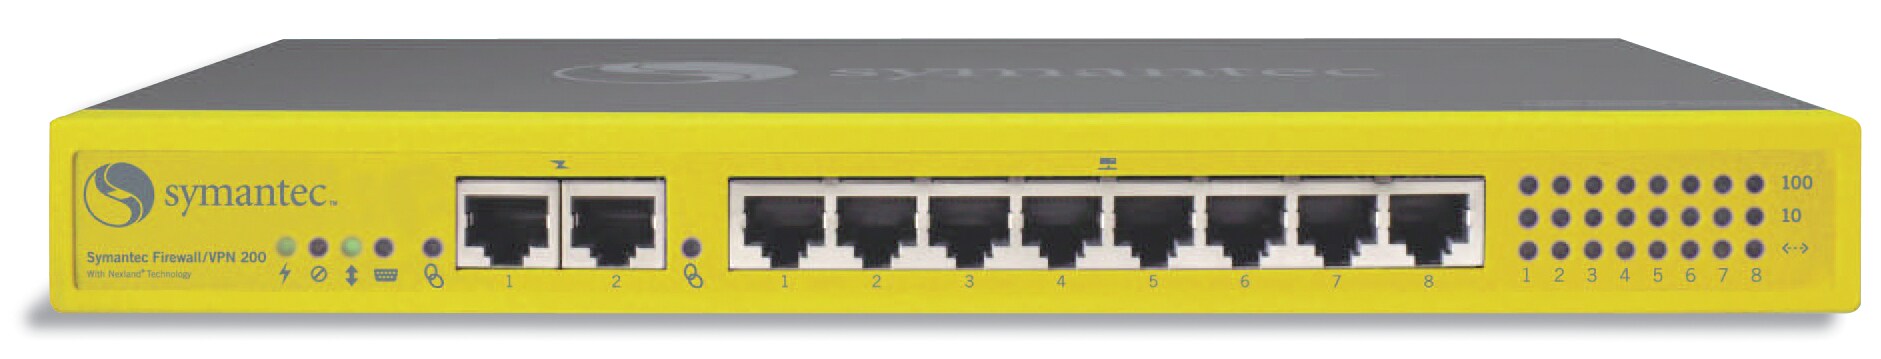 Symantec 200R Firewall/VPN Appliance
